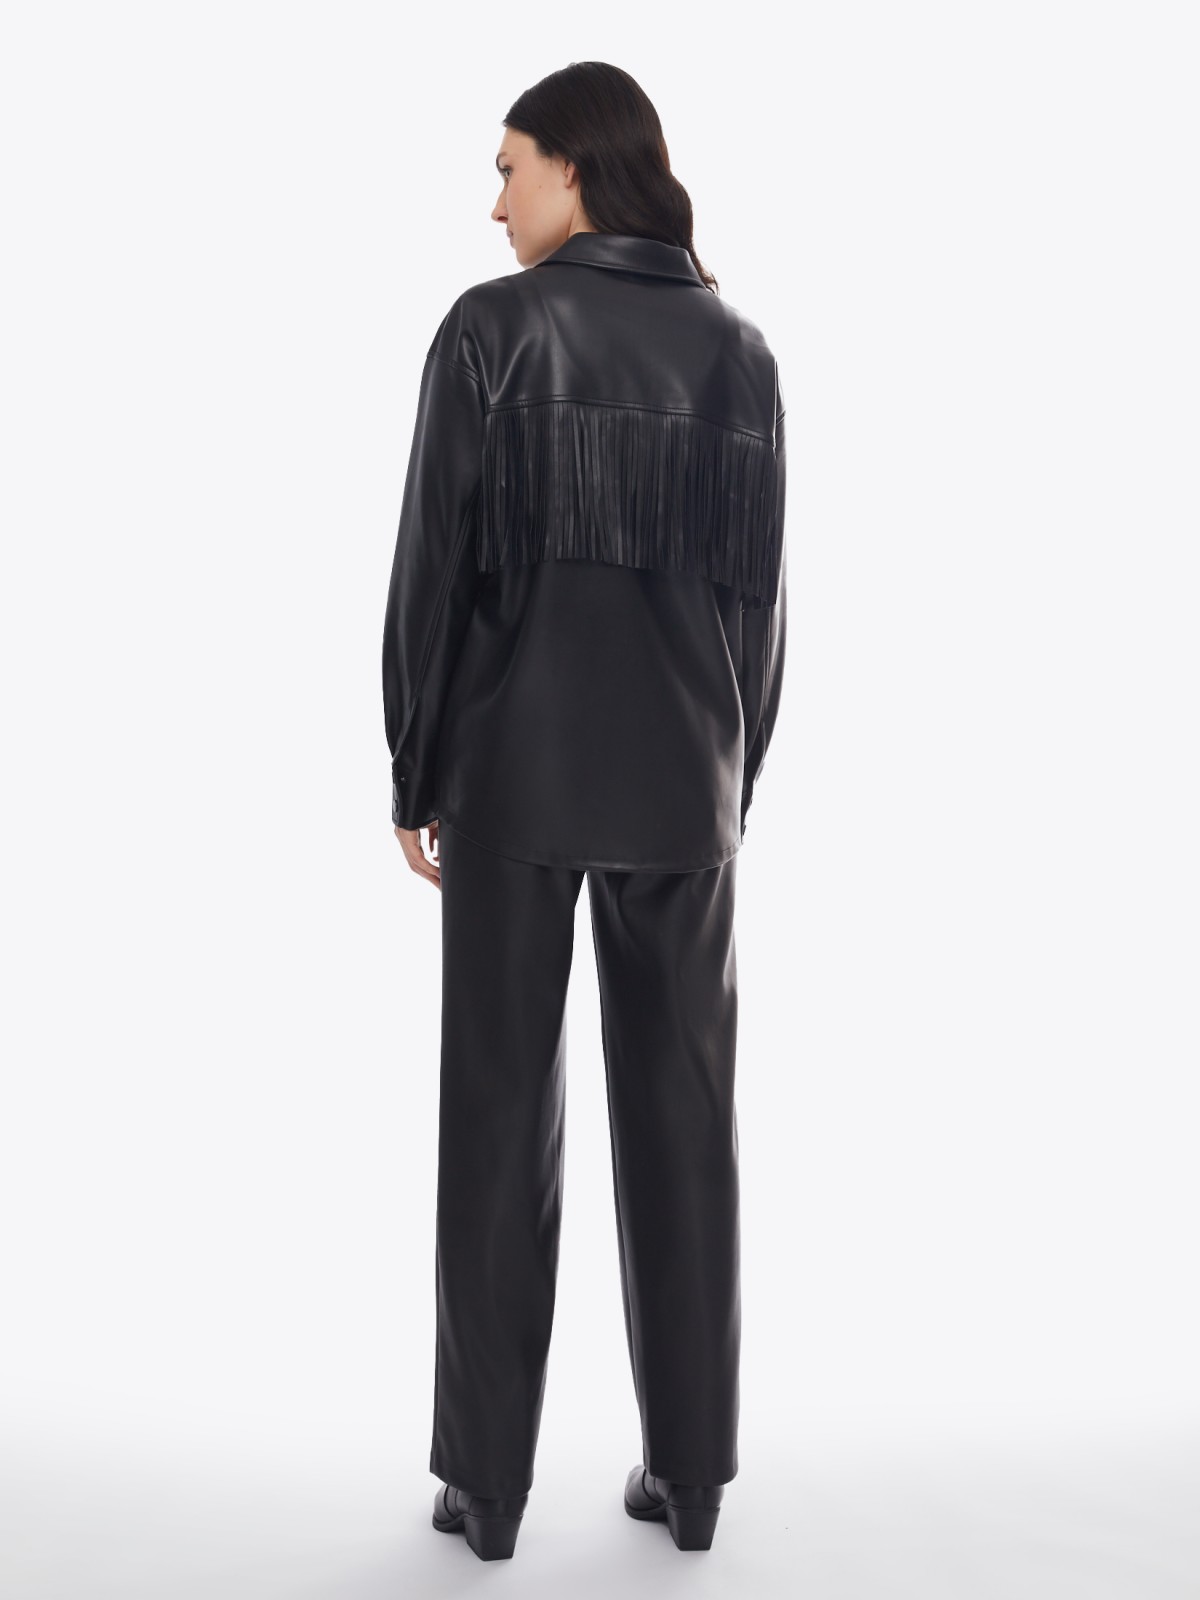 Куртка-рубашка из экокожи с бахромой на кокетке zolla 02413540L051, цвет черный, размер S - фото 6